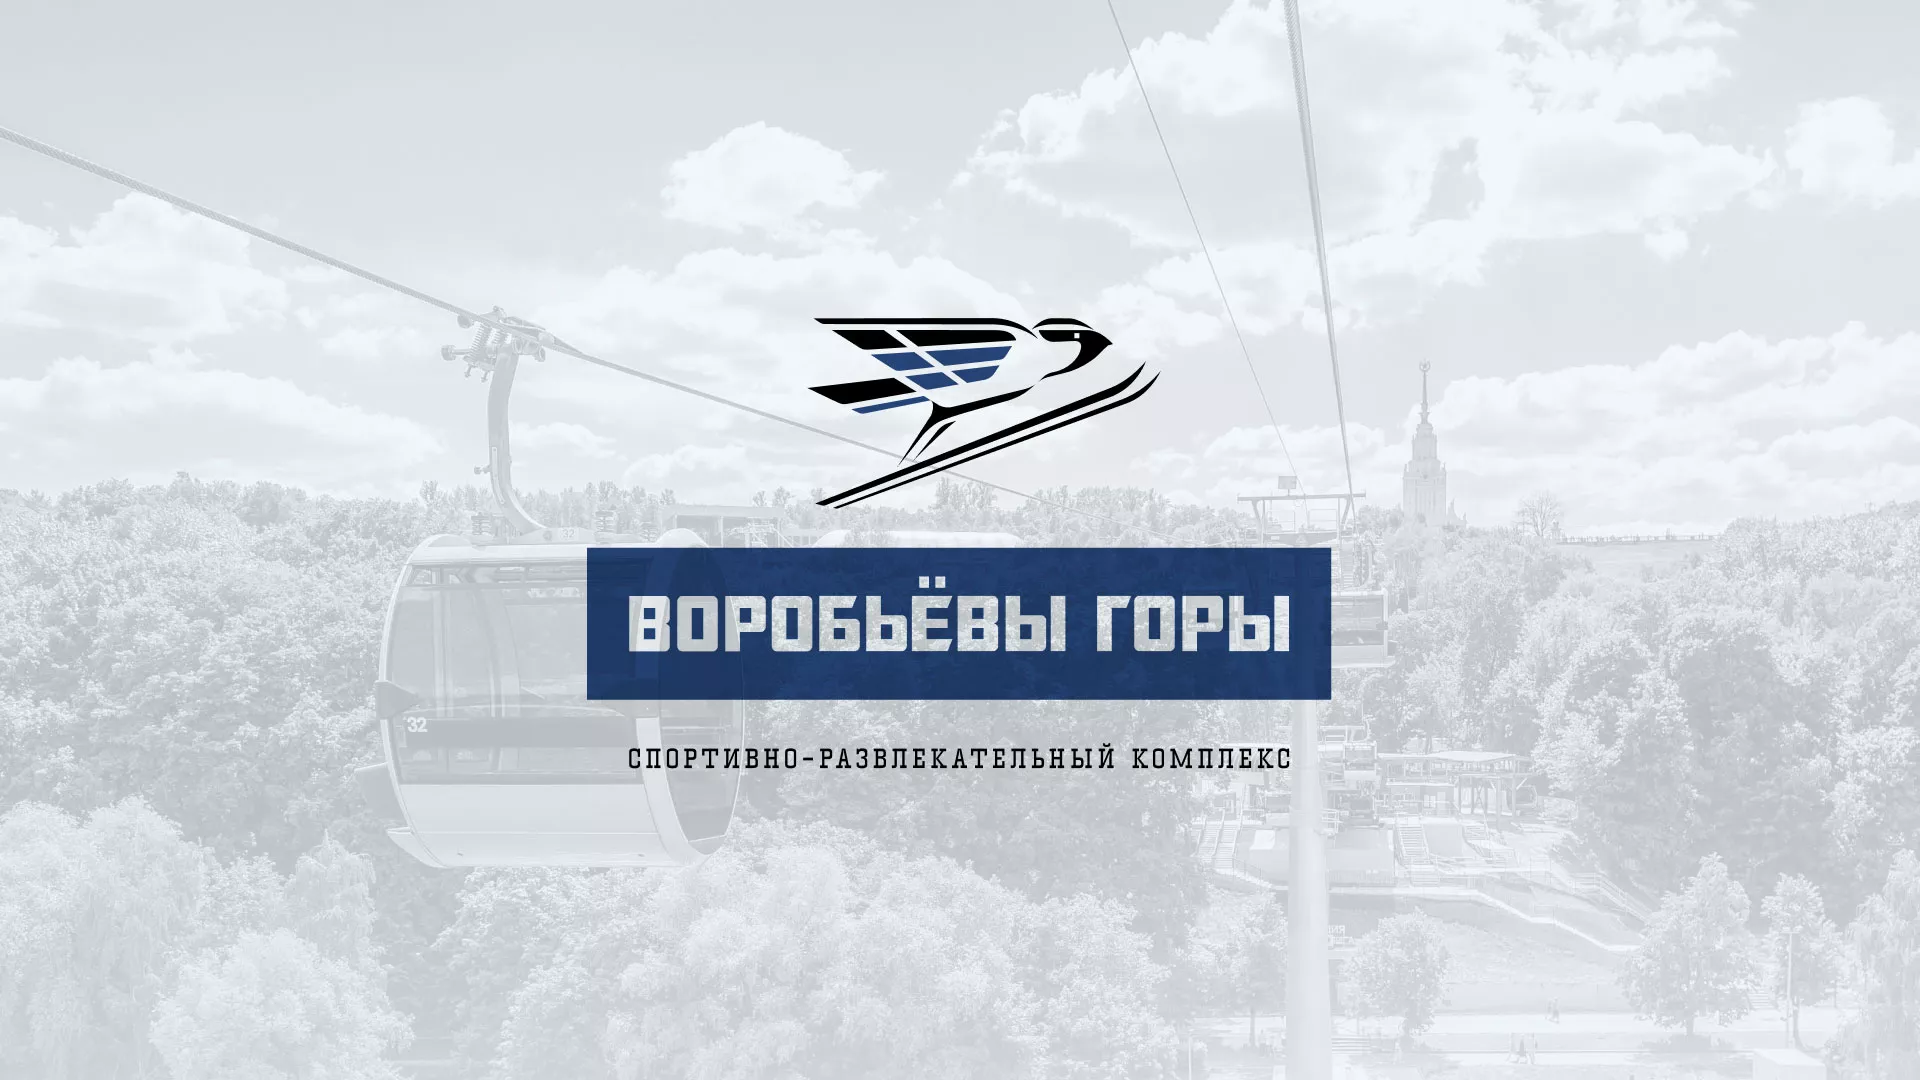 Разработка сайта в Междуреченске для спортивно-развлекательного комплекса «Воробьёвы горы»